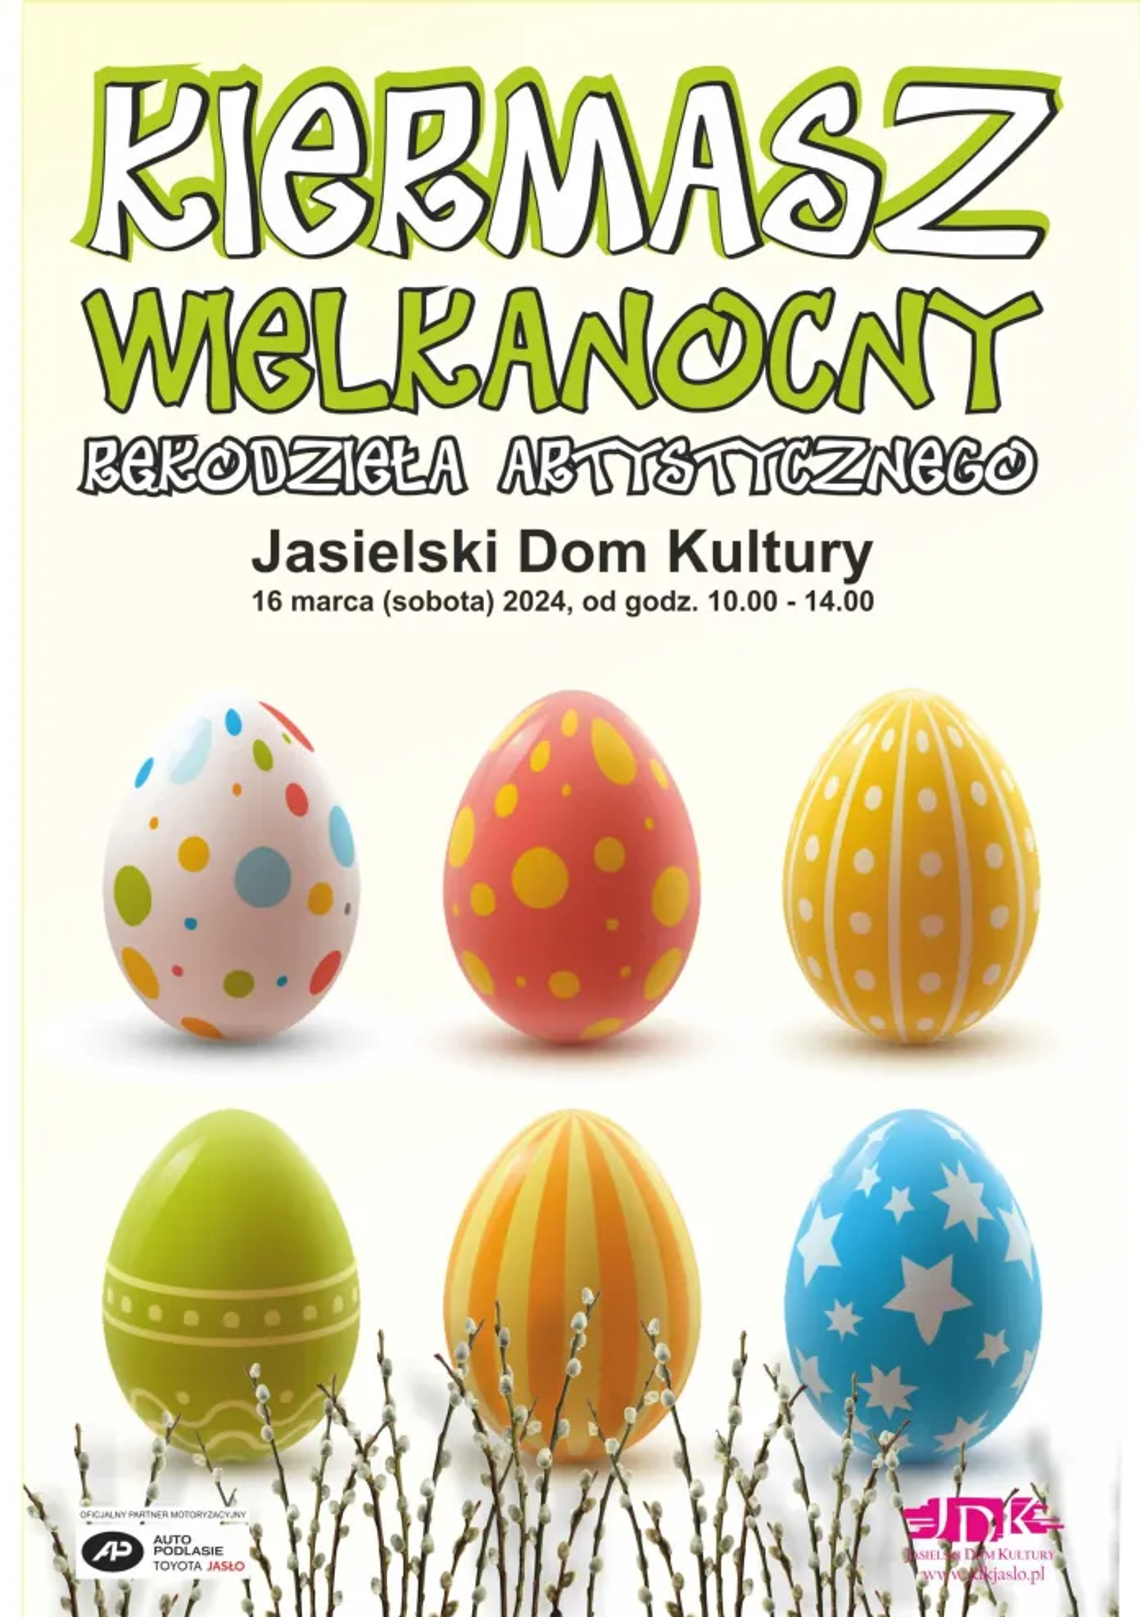 Kiermasz Wielkanocny w Jaśle | halogolrice.info